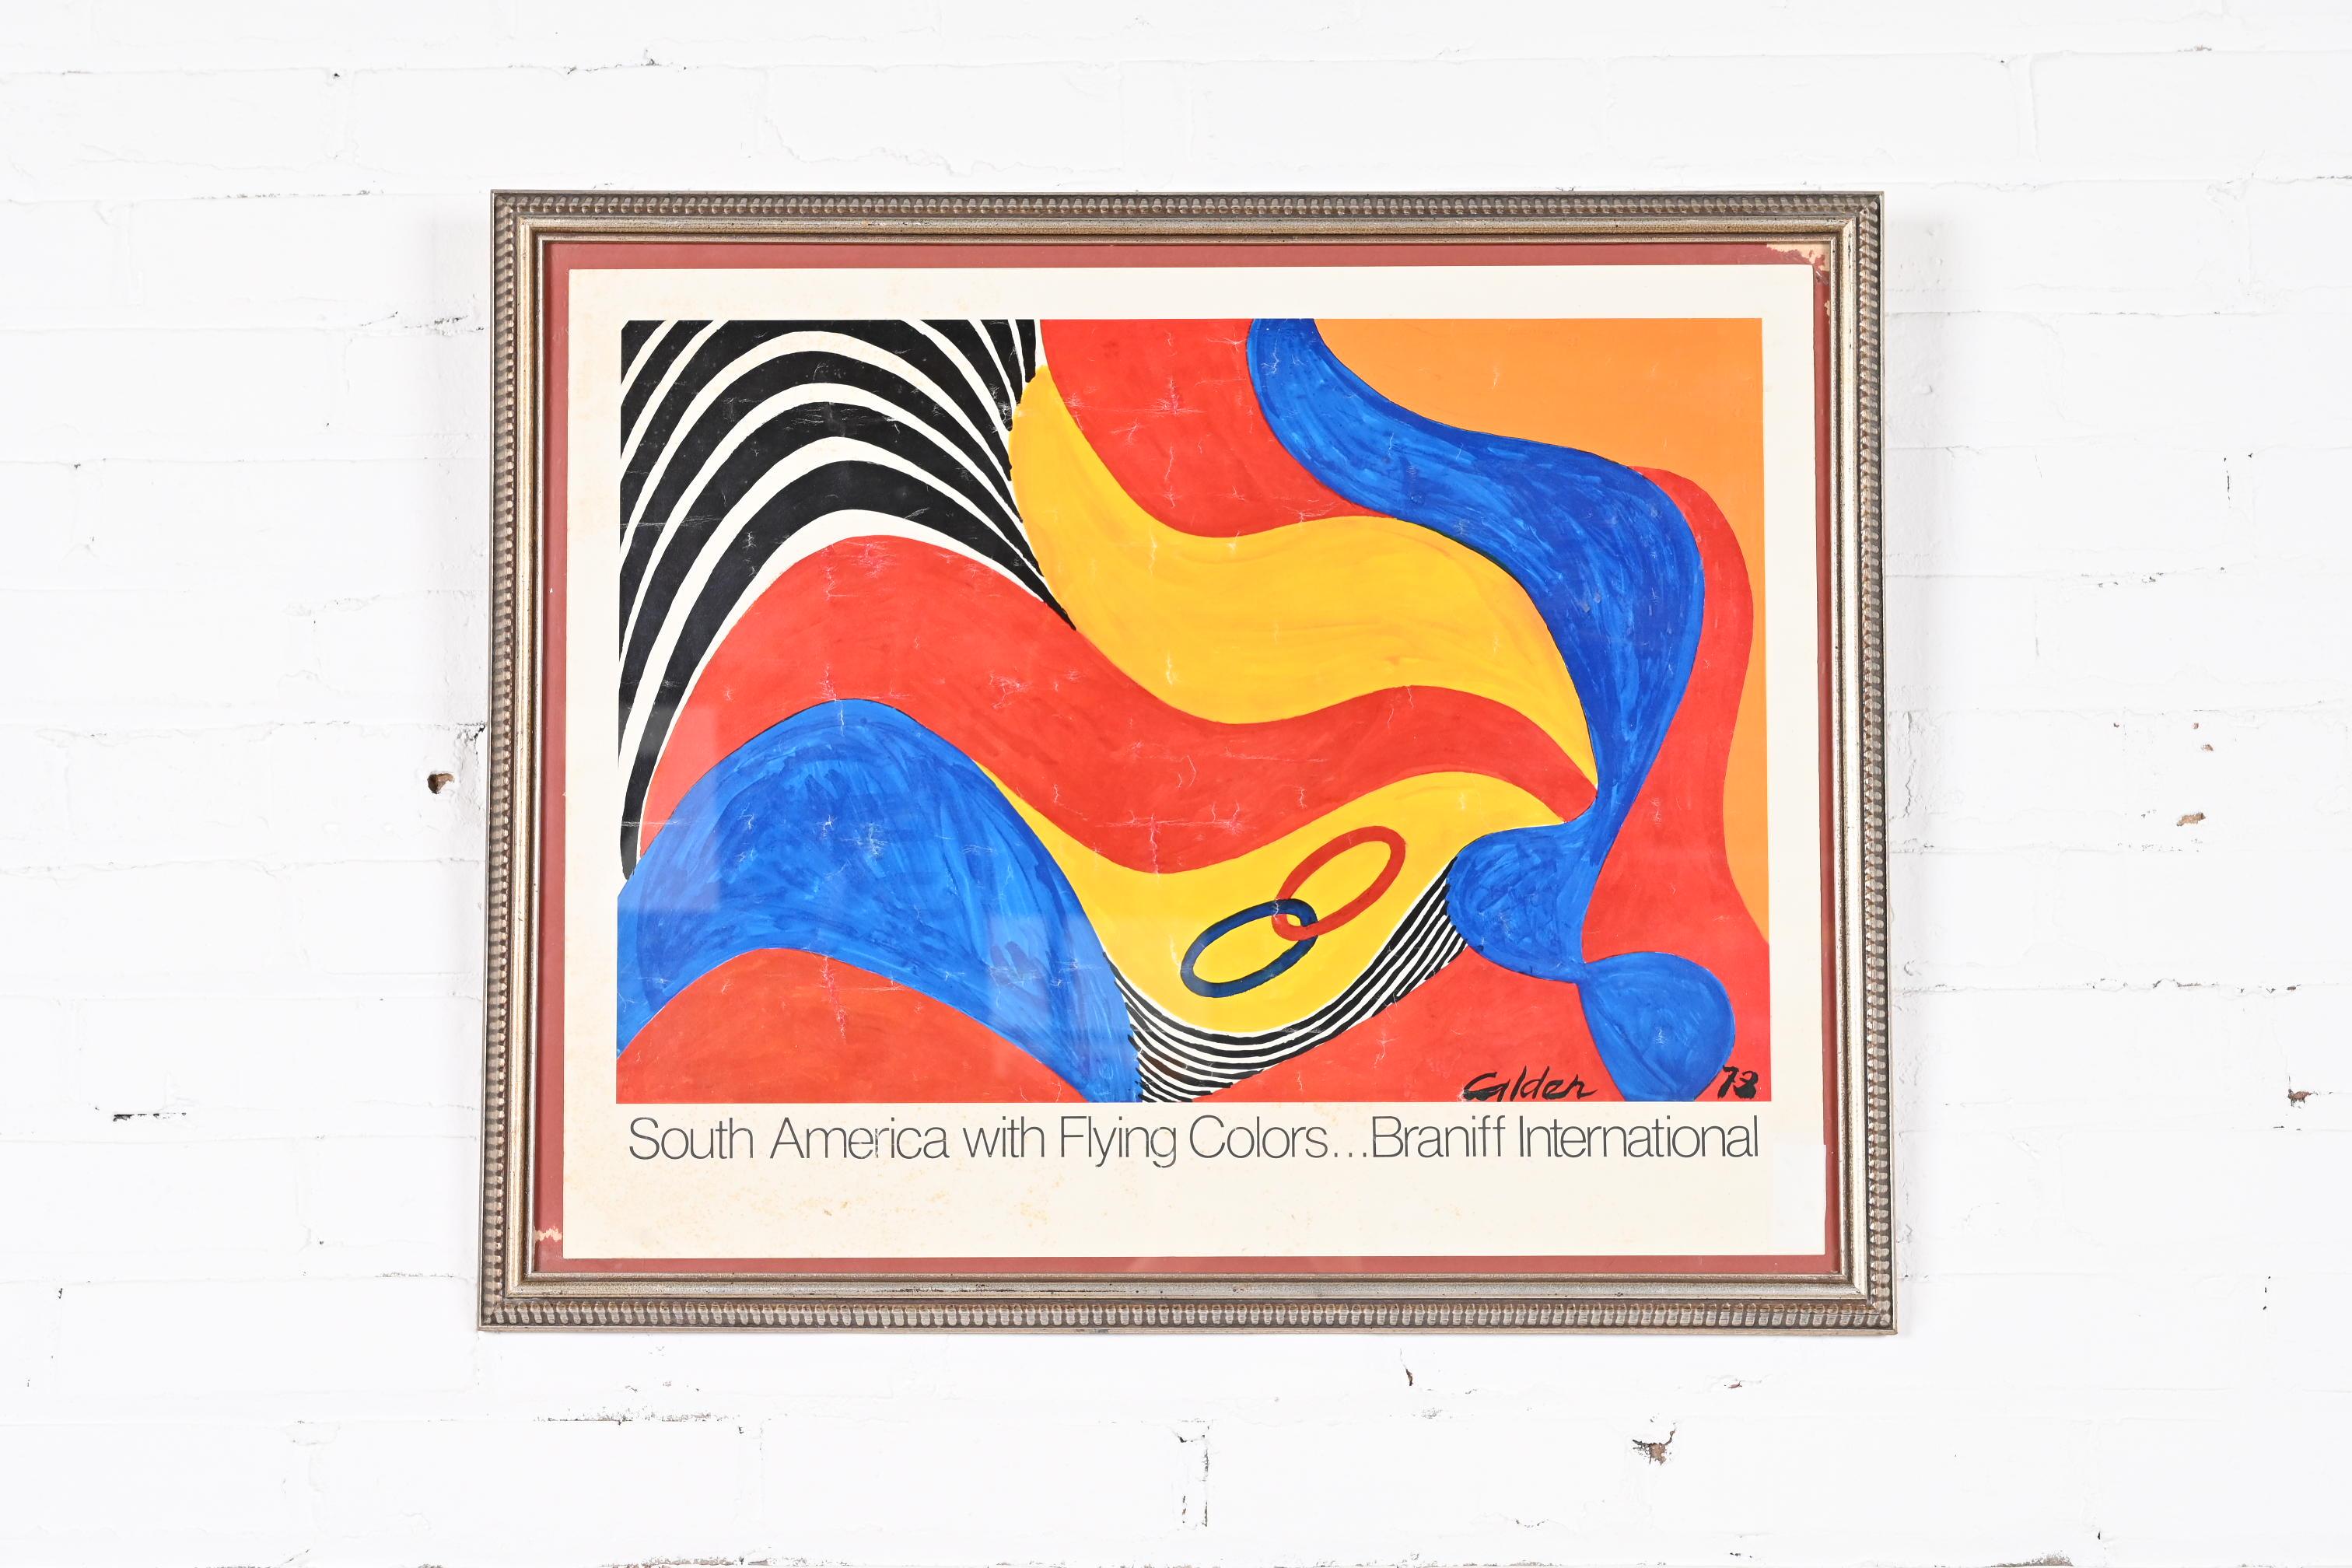 Magnifique lithographie abstraite encadrée d'époque, issue de la collection Flying Colors, commandée par Braniff International Airlines.

Par Alexander Calder

ÉTATS-UNIS, 1973

Mesures : 27 